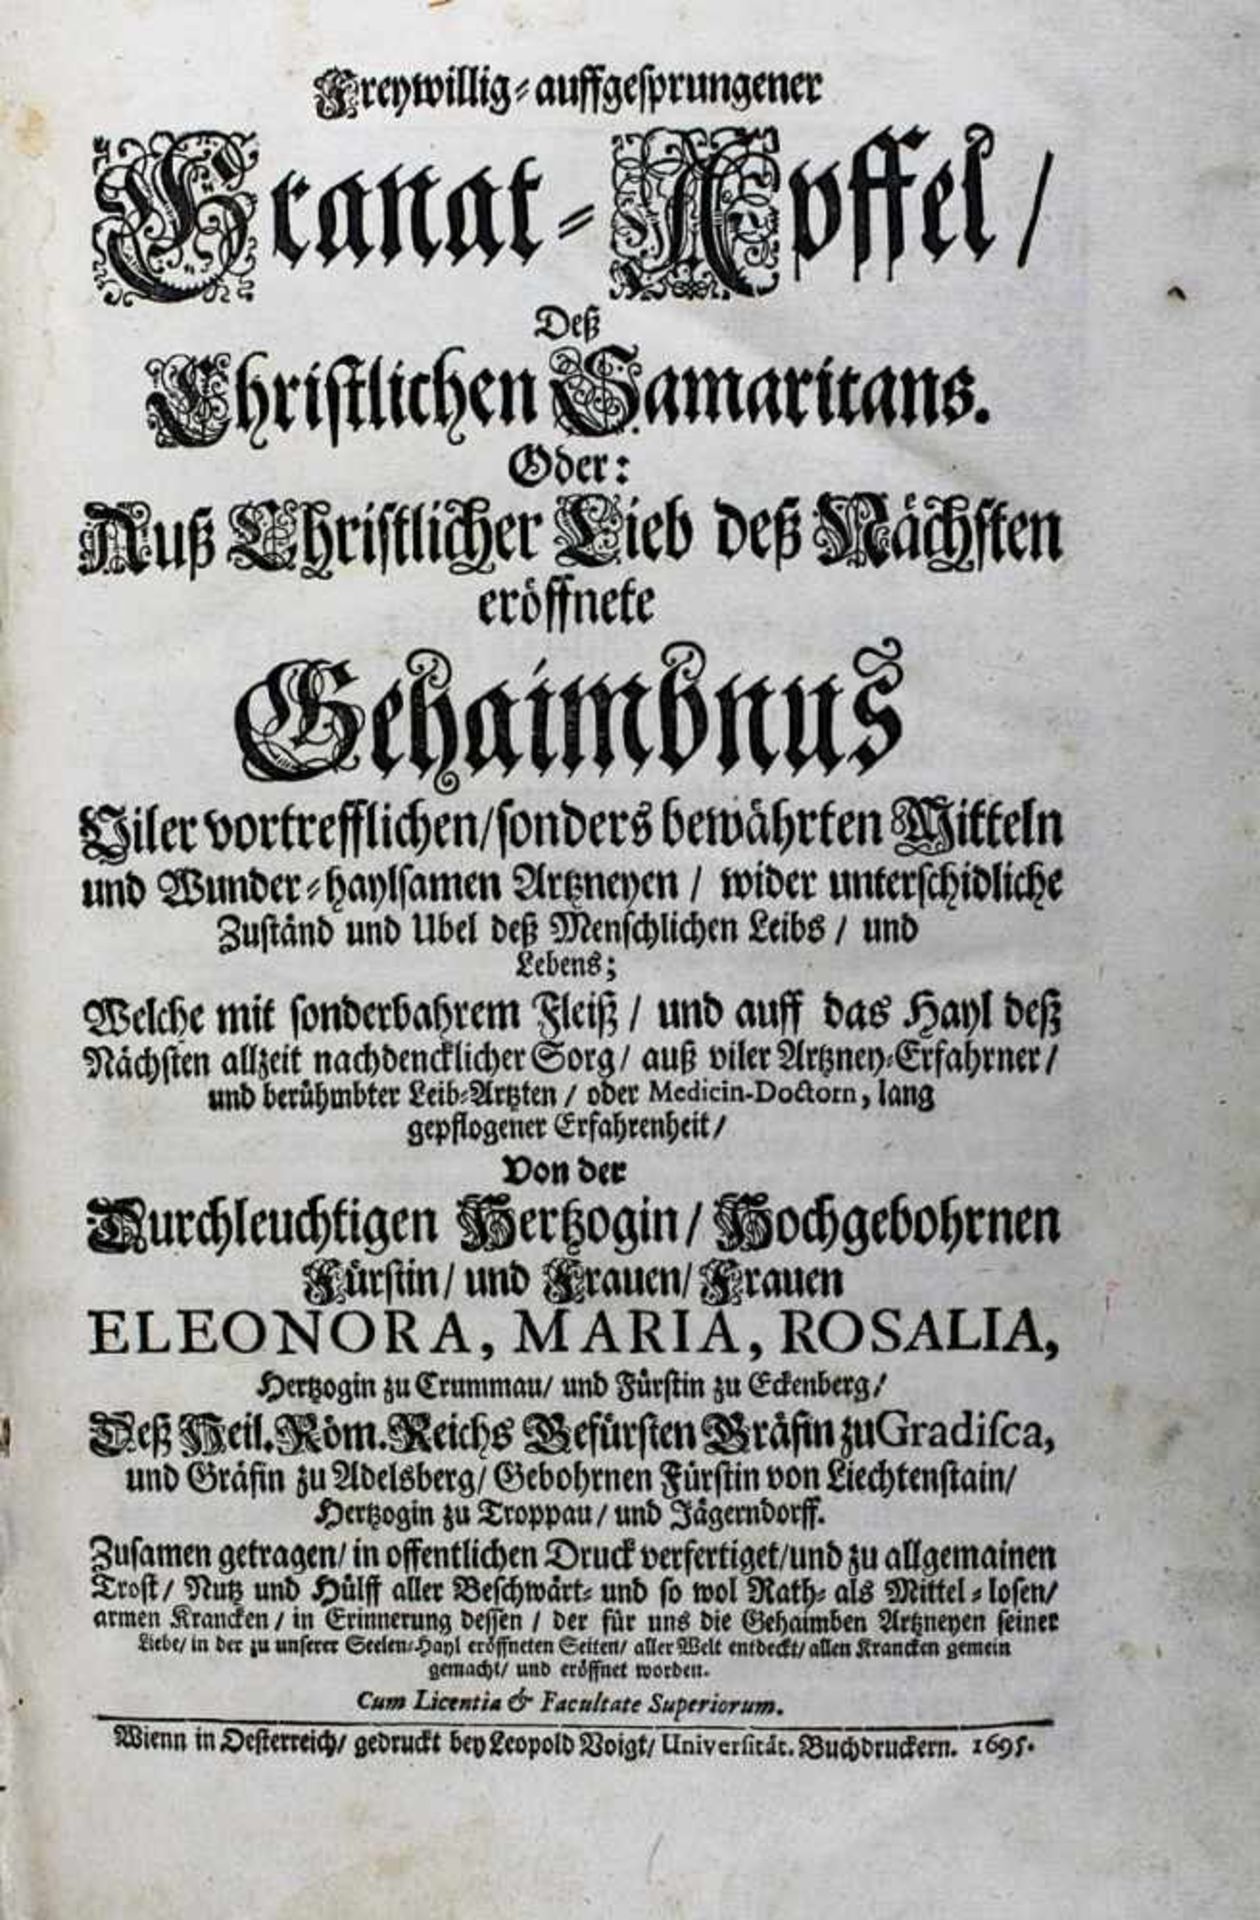 Eleonora Maria Rosalia Herzogin von Crummau, Troppau und Jägerndorff..., Freywillg aufgesprungener